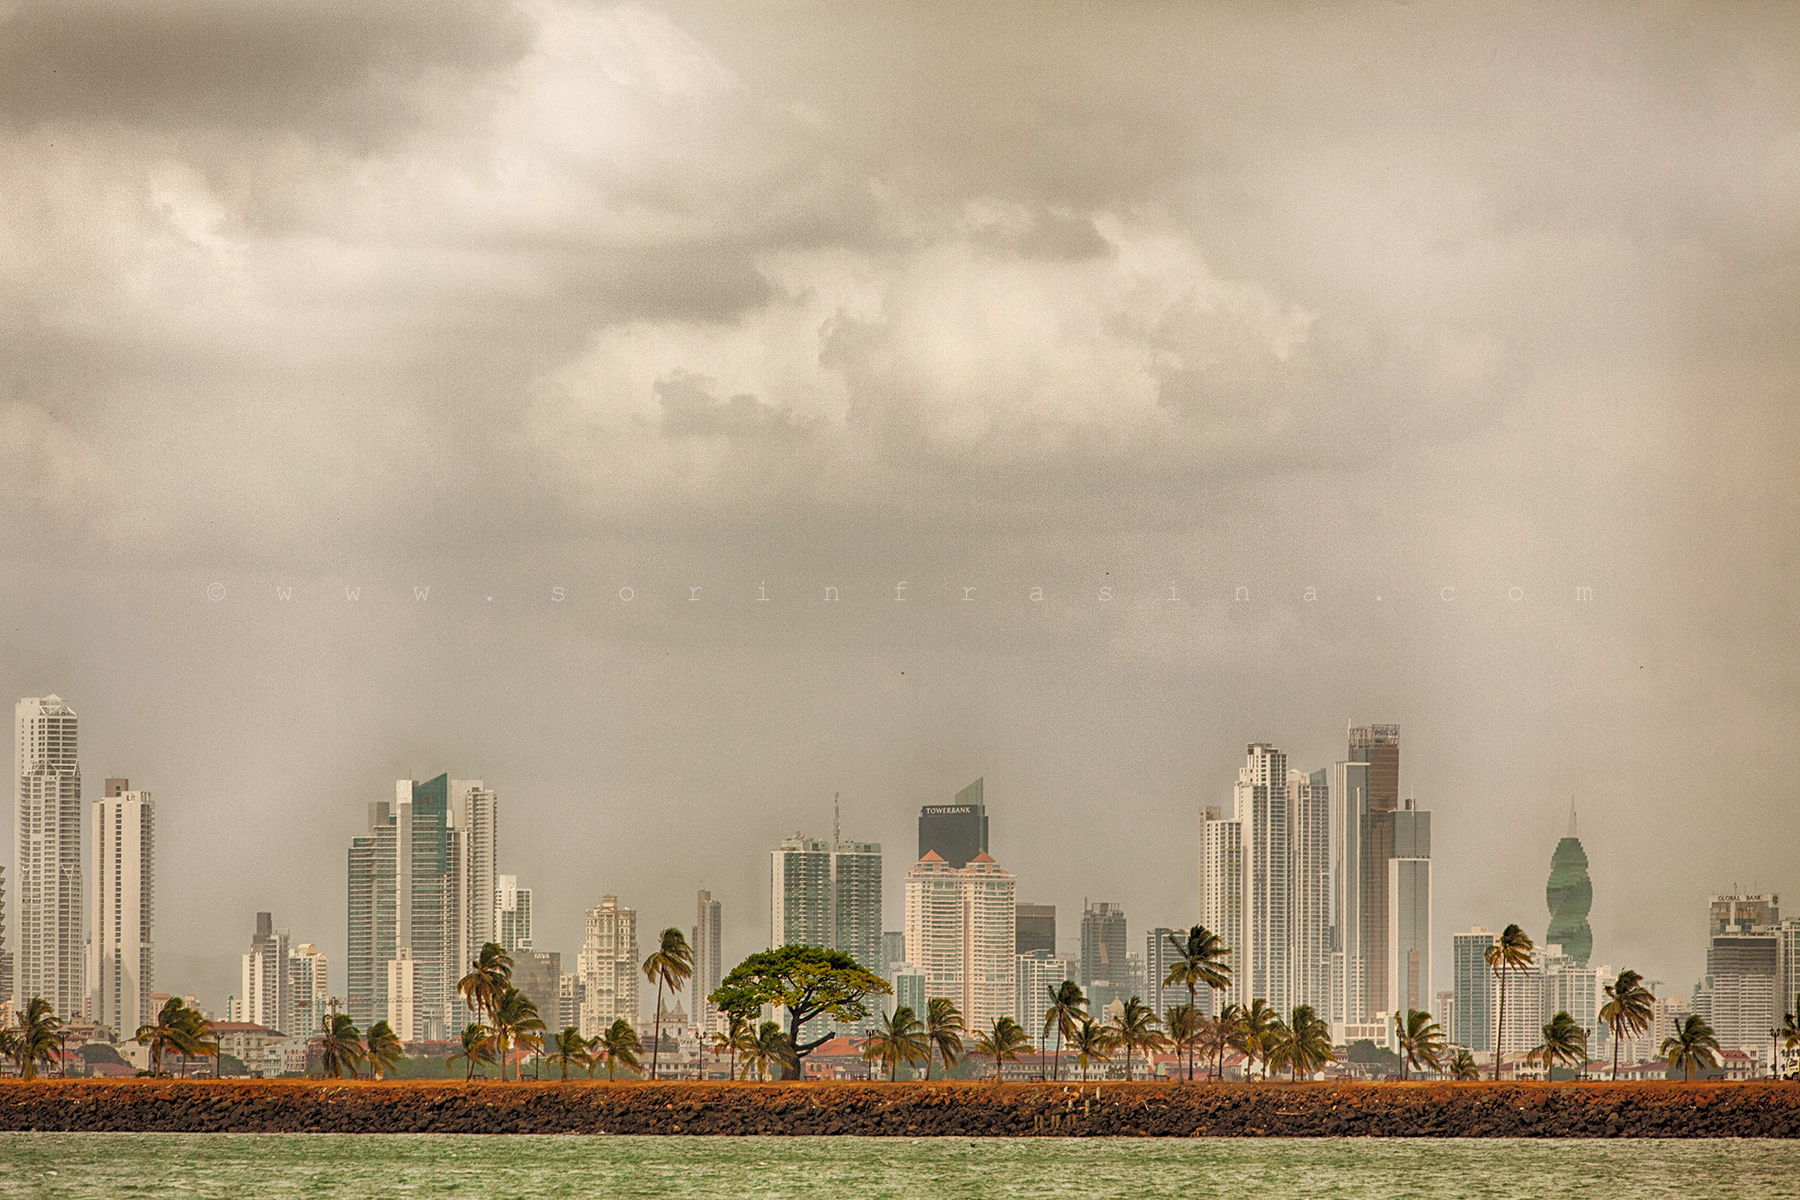 image from Panama City - © Sorin Frasina